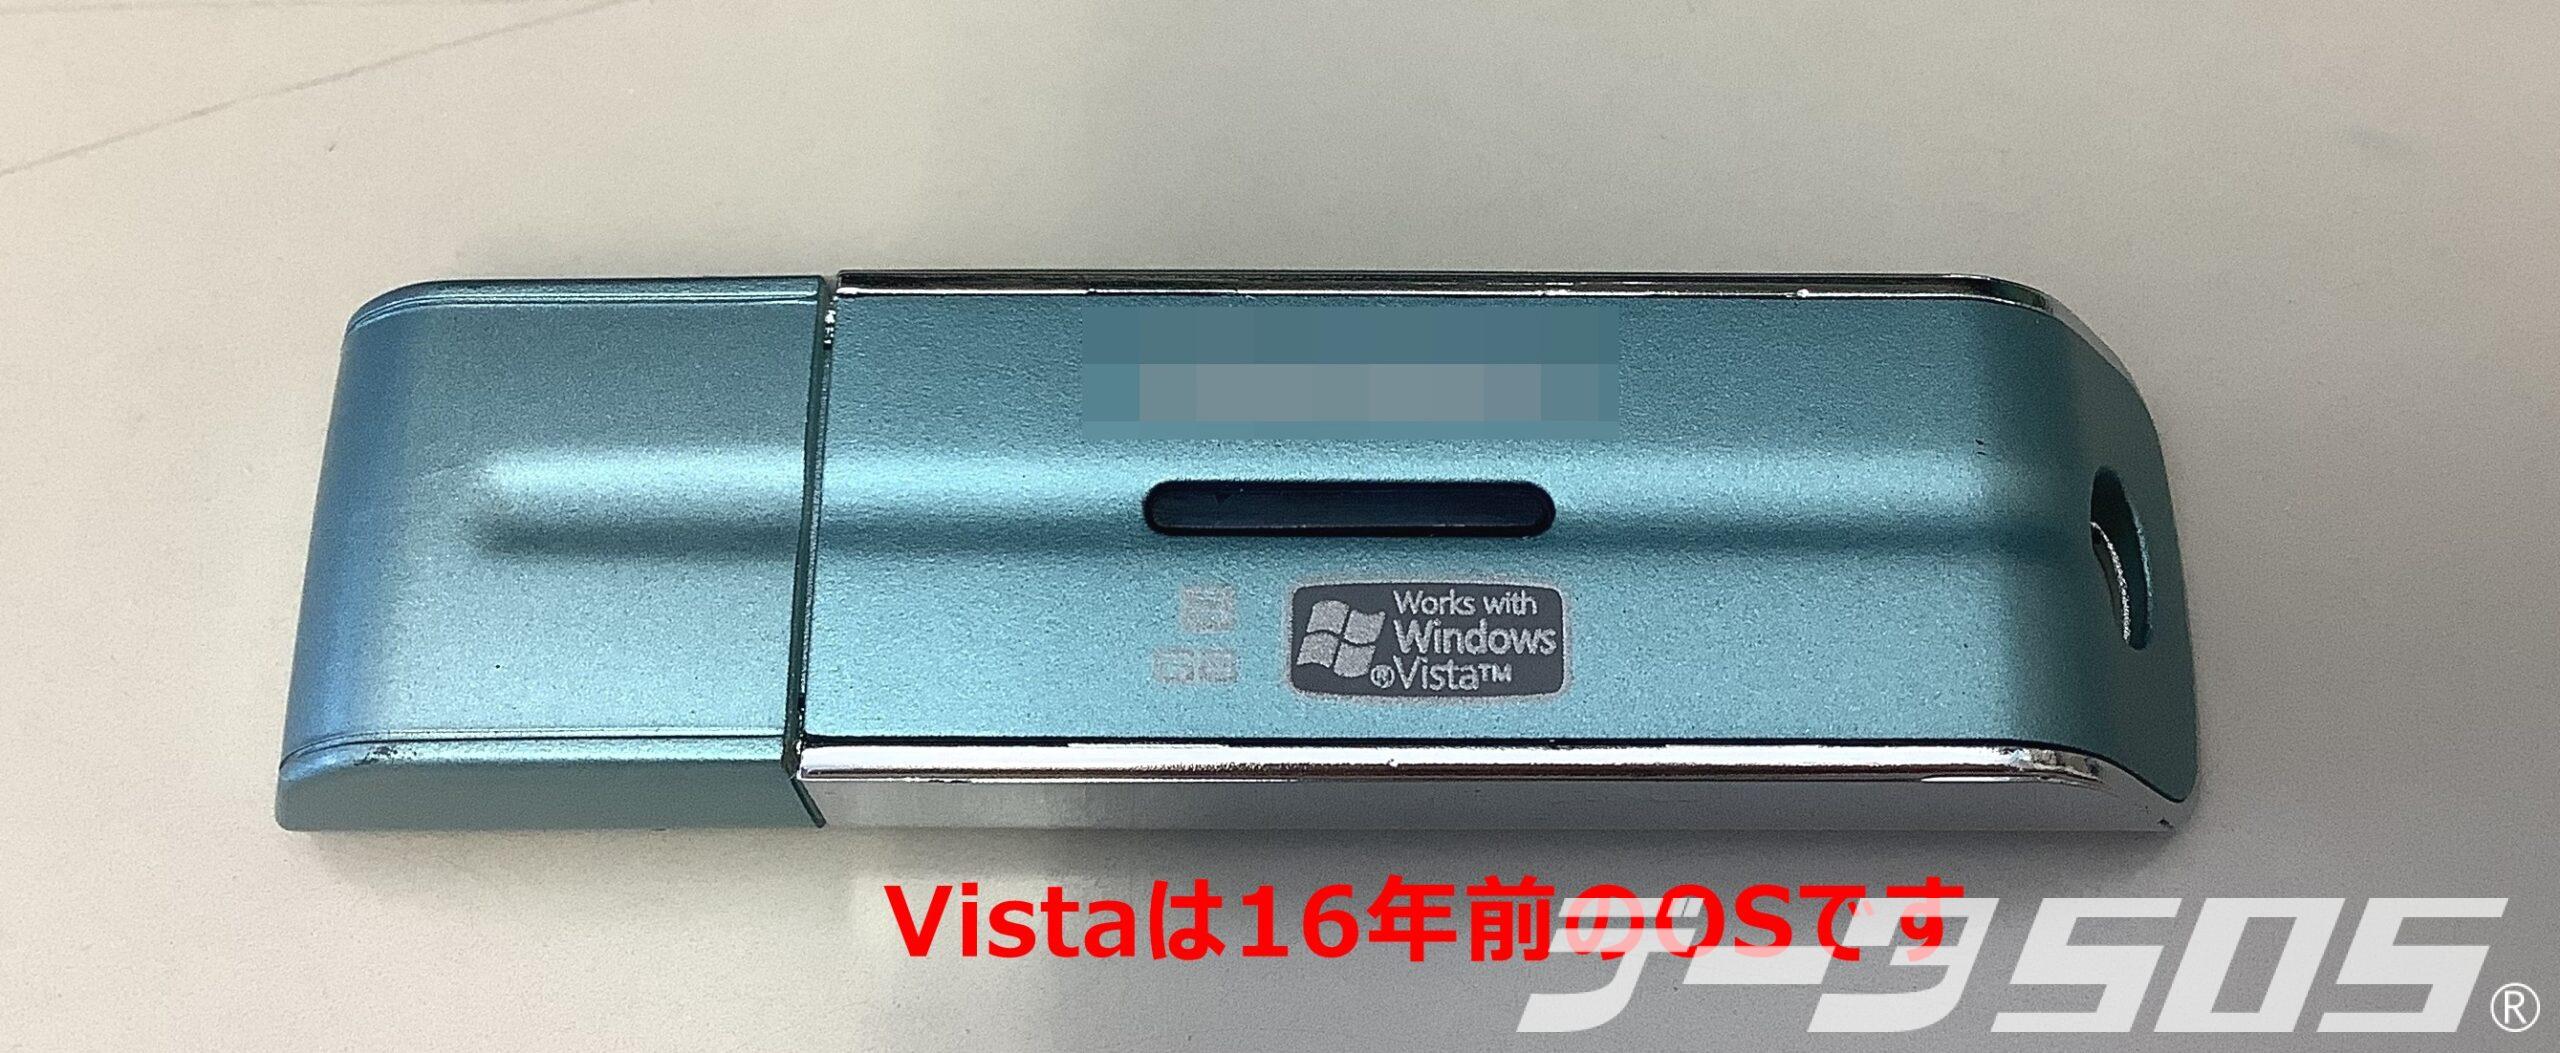 USBメモリにWorks With Windows Vistaと書かれている